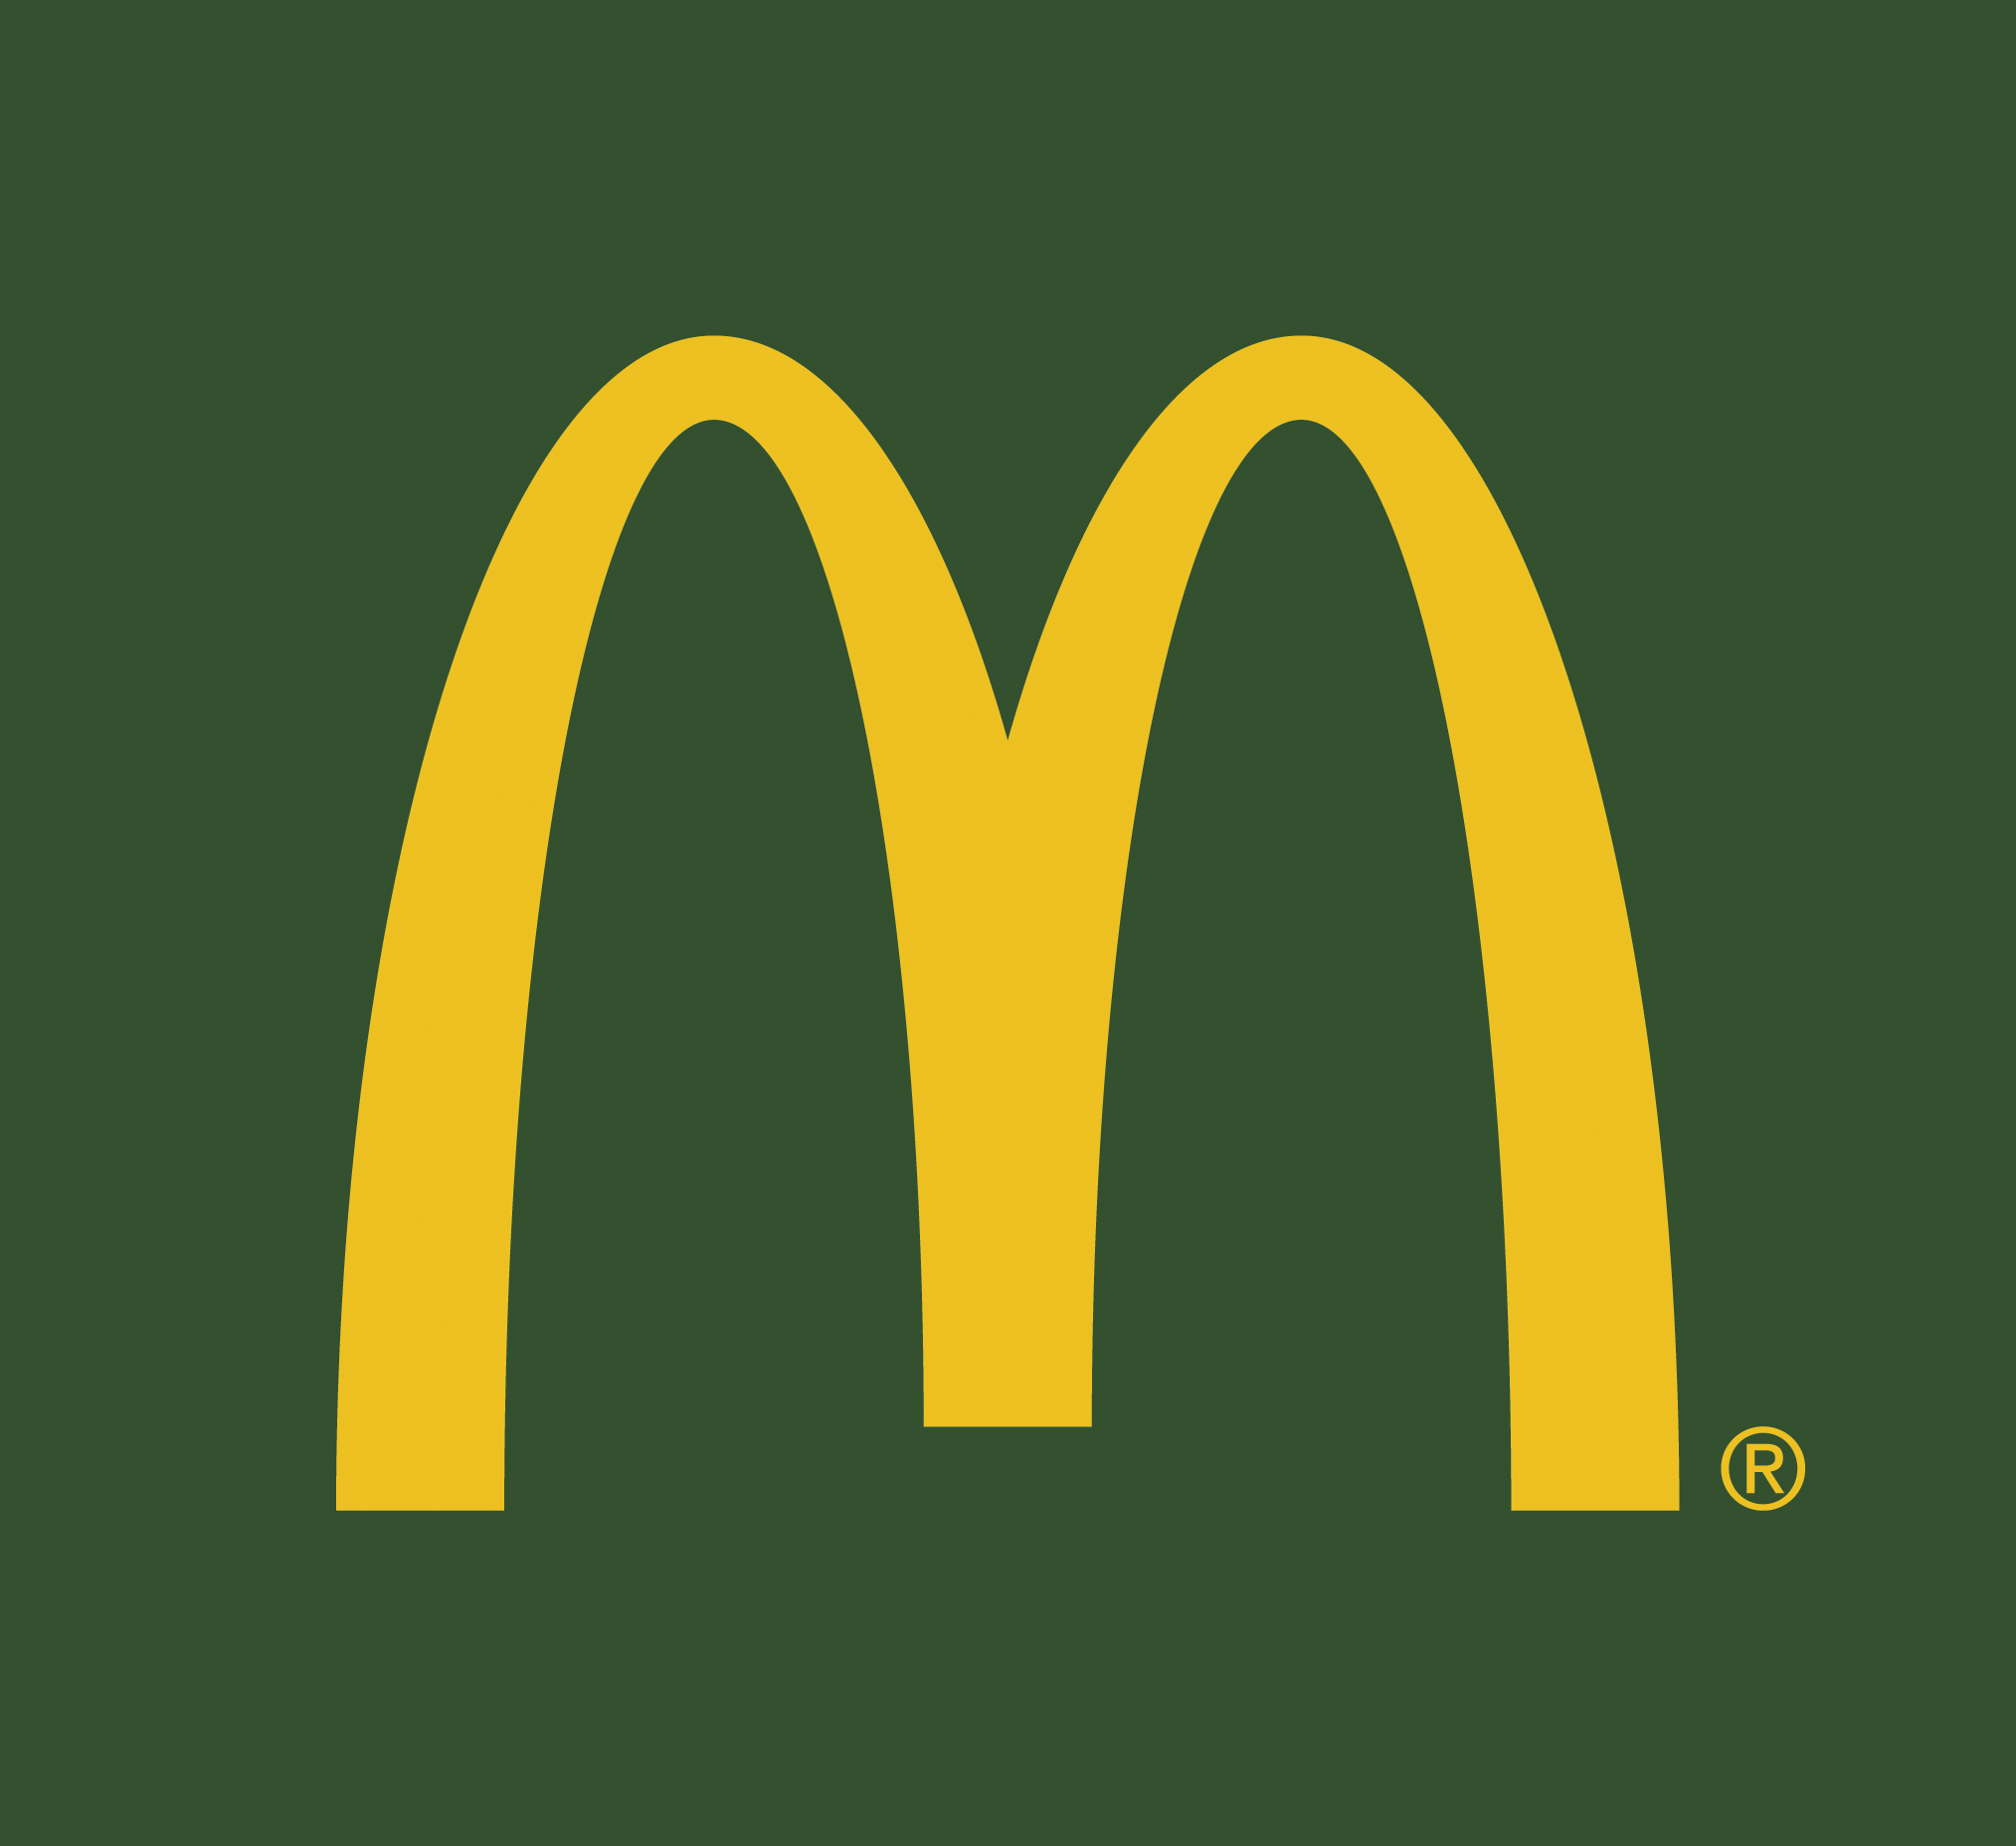 Logo Mc Donald's